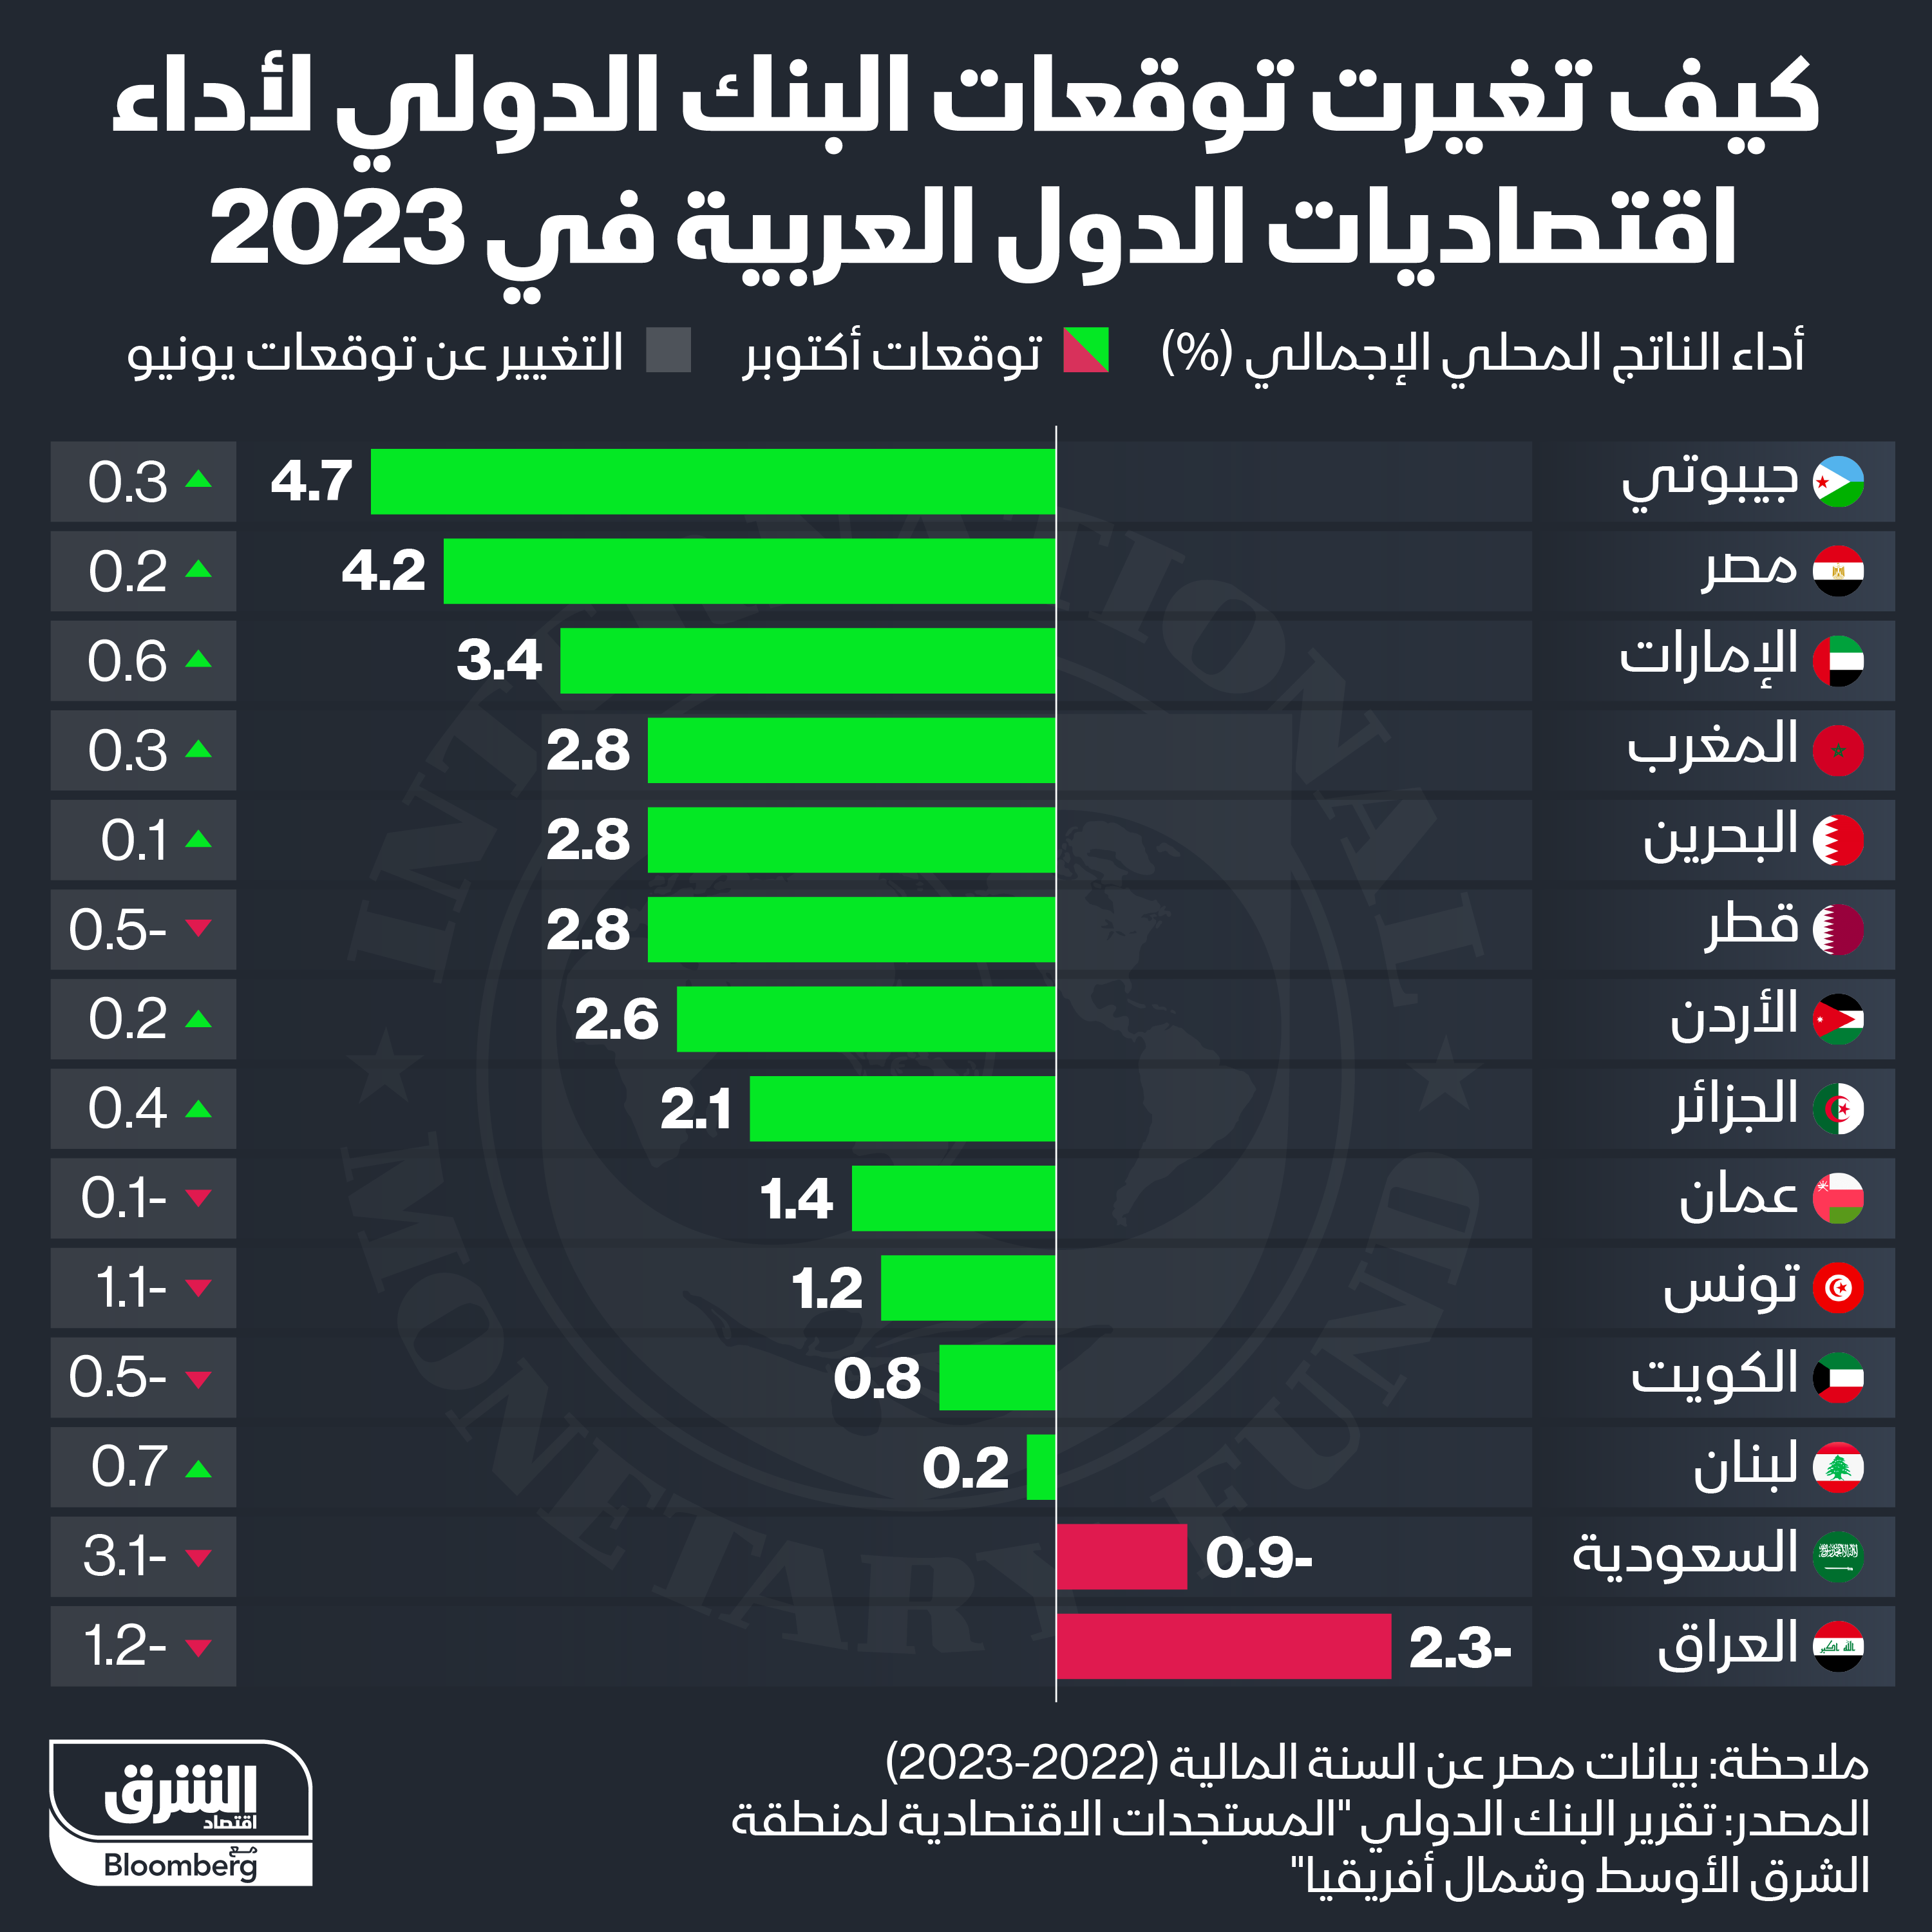 توقعات البنك الدولي لأداء اقتصاديات الدول العربية في أكتوبر 2023